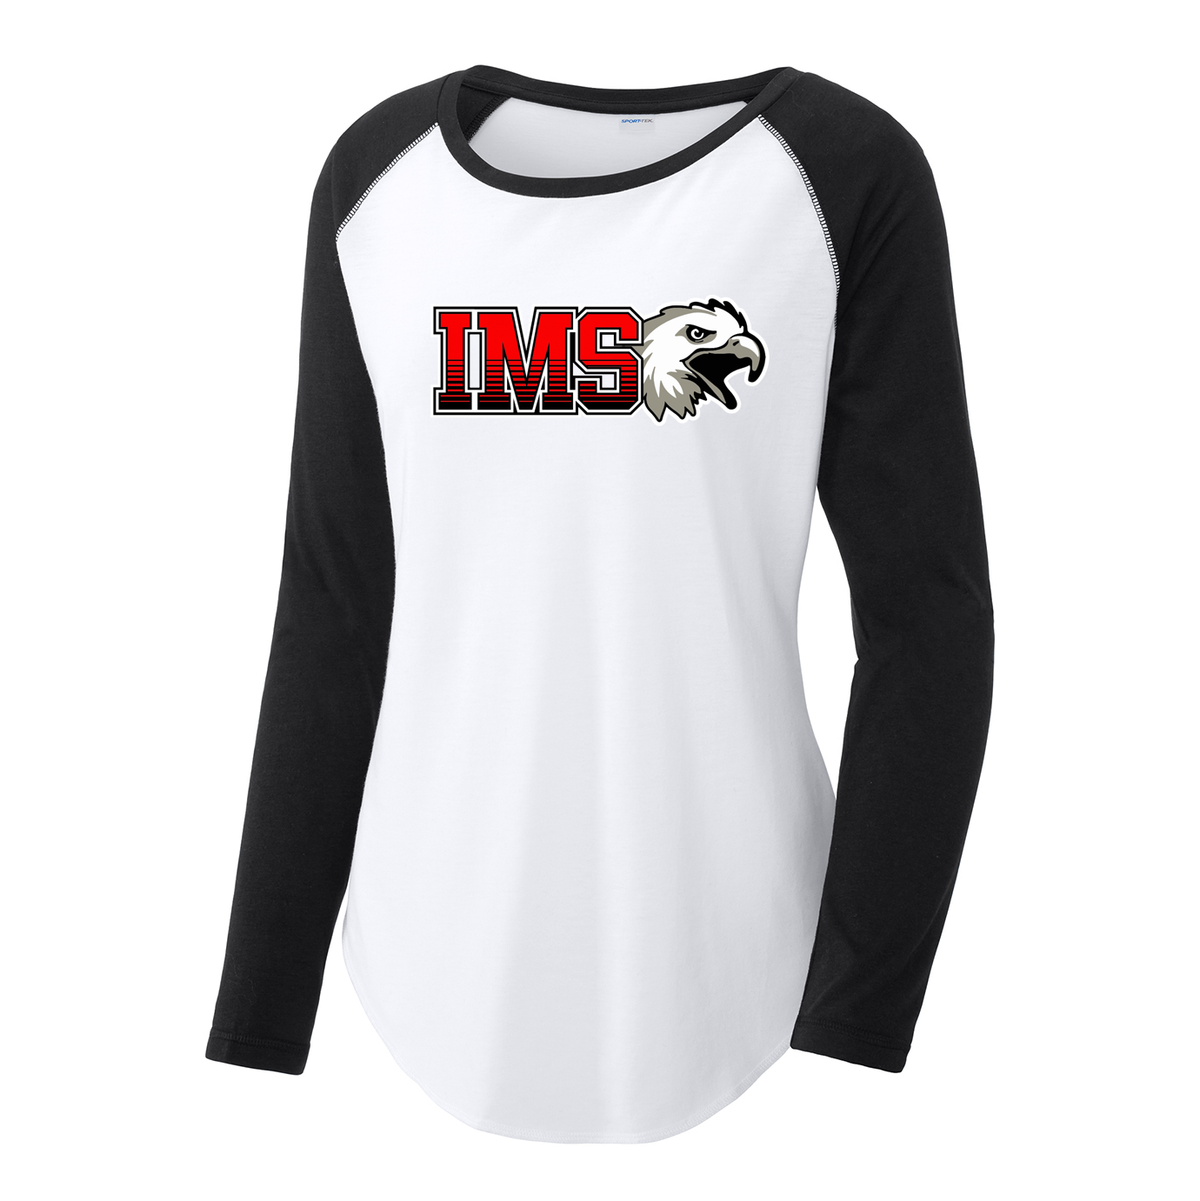 IMS Lacrosse Women's Raglan Long Sleeve CottonTouch